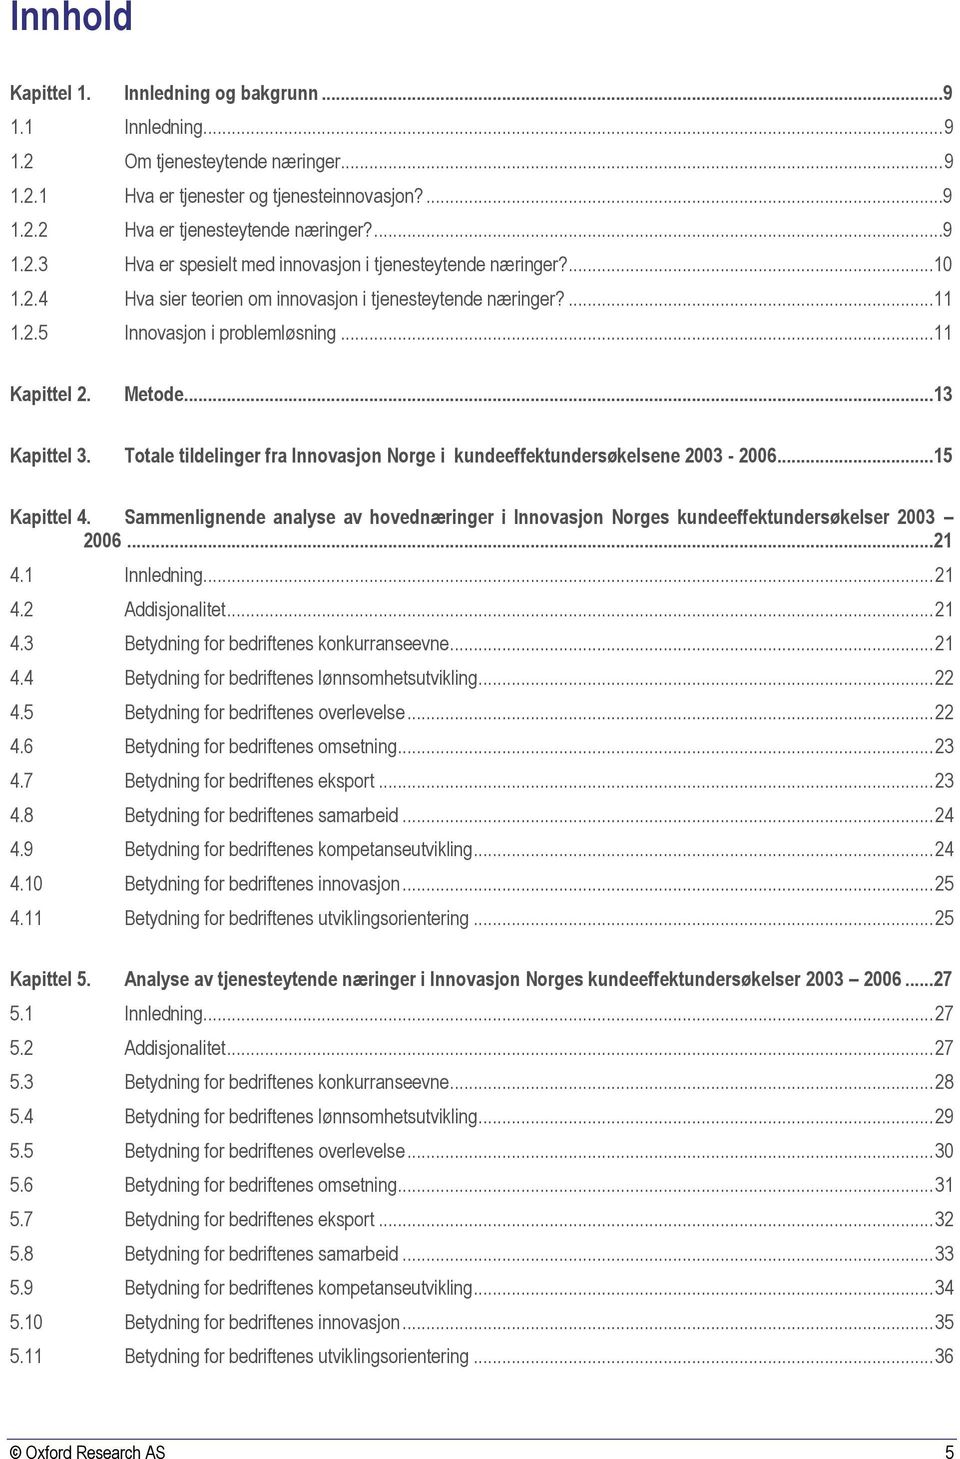 Totale tildelinger fra Innovasjon Norge i kundeeffektundersøkelsene 2003-2006...15 Kapittel 4. Sammenlignende analyse av hovednæringer i Innovasjon Norges kundeeffektundersøkelser 2003 2006...21 4.